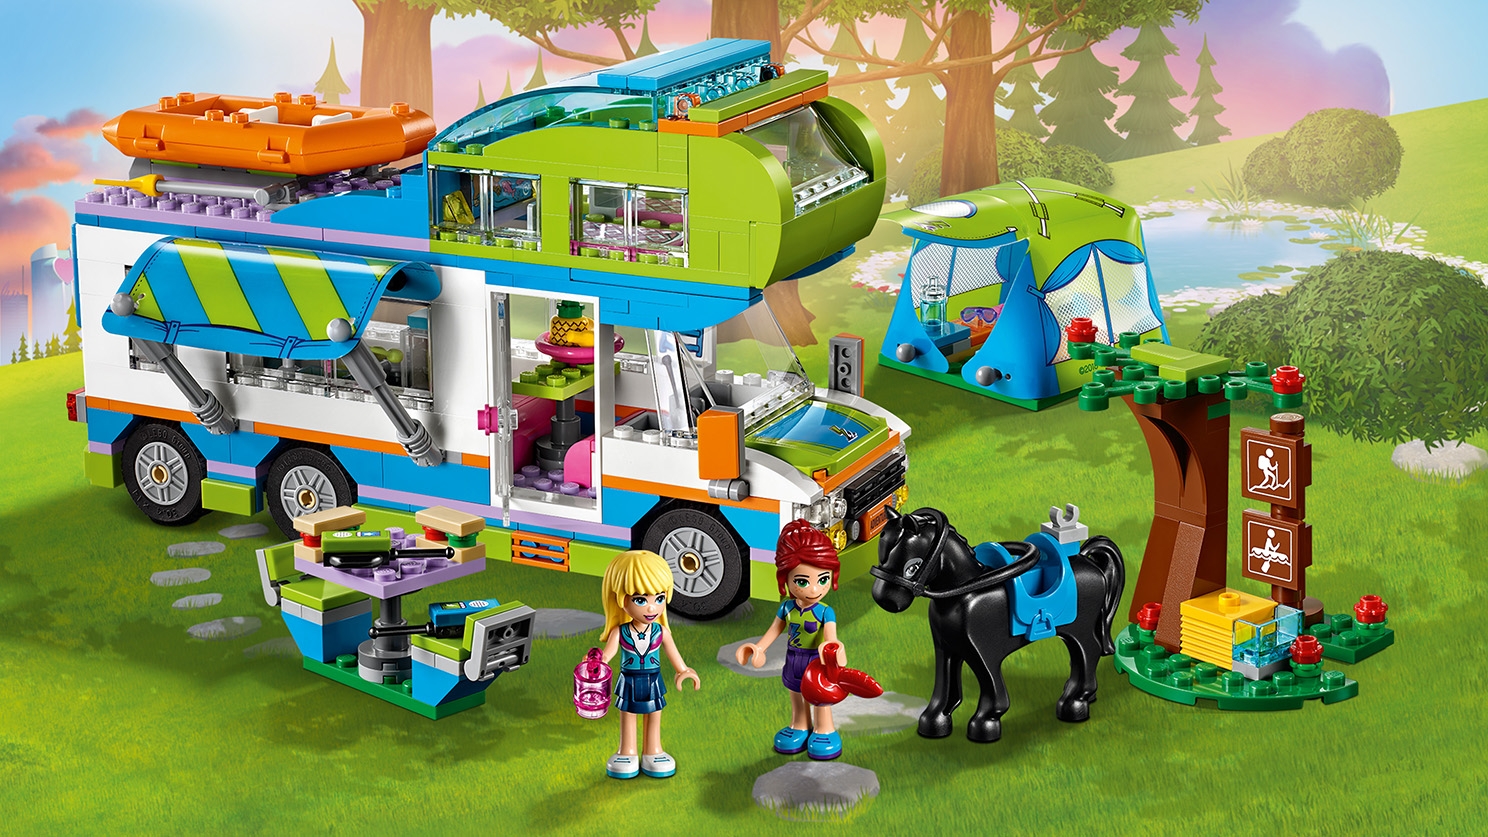 ミアのキャンピングカー 41339 - レゴ®フレンズセット - LEGO.comキッズ